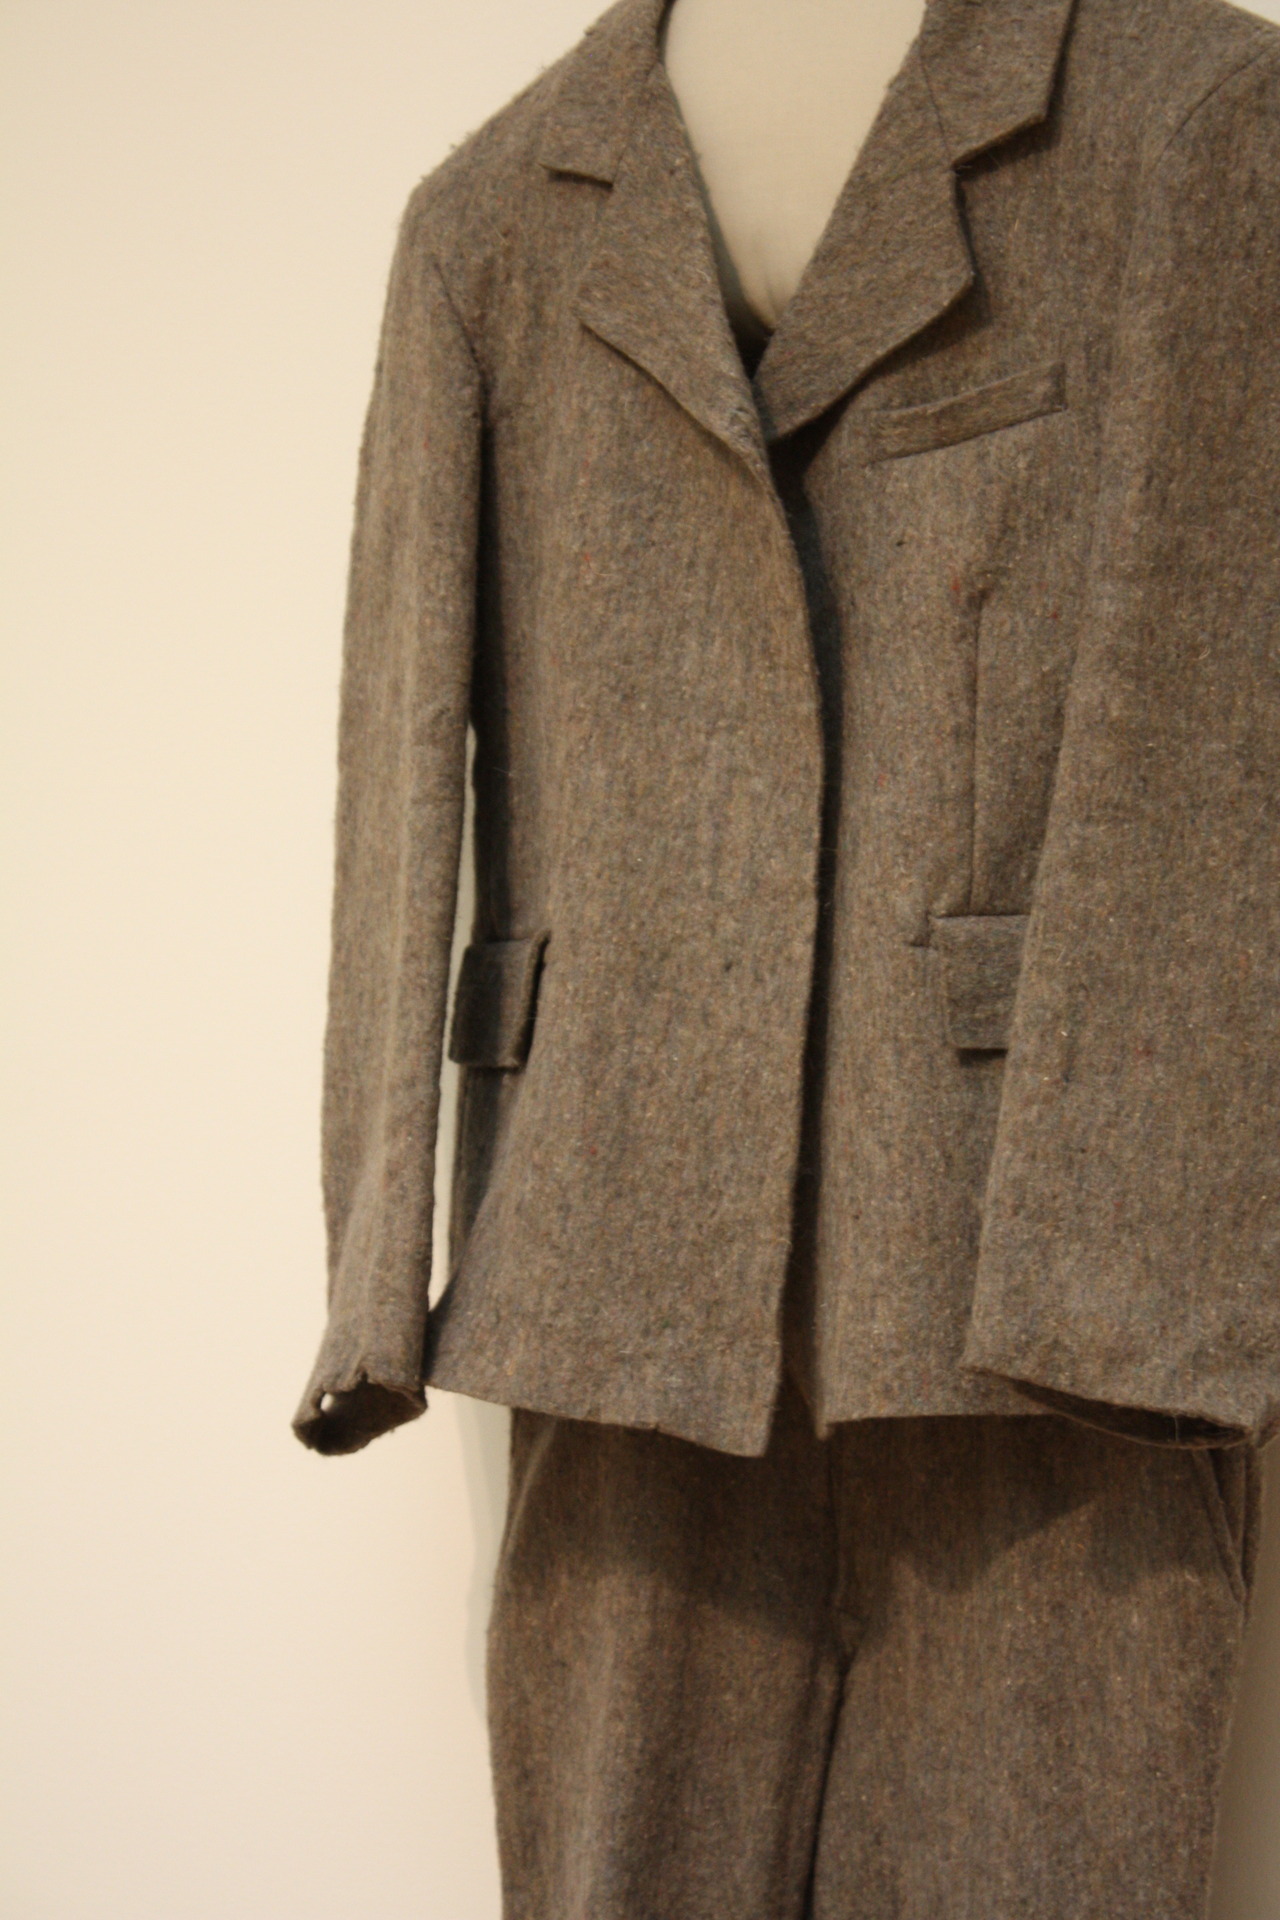 Hello, St. Louis : Joseph Beuys’ Felt Suit (Filzanzug) at the St....